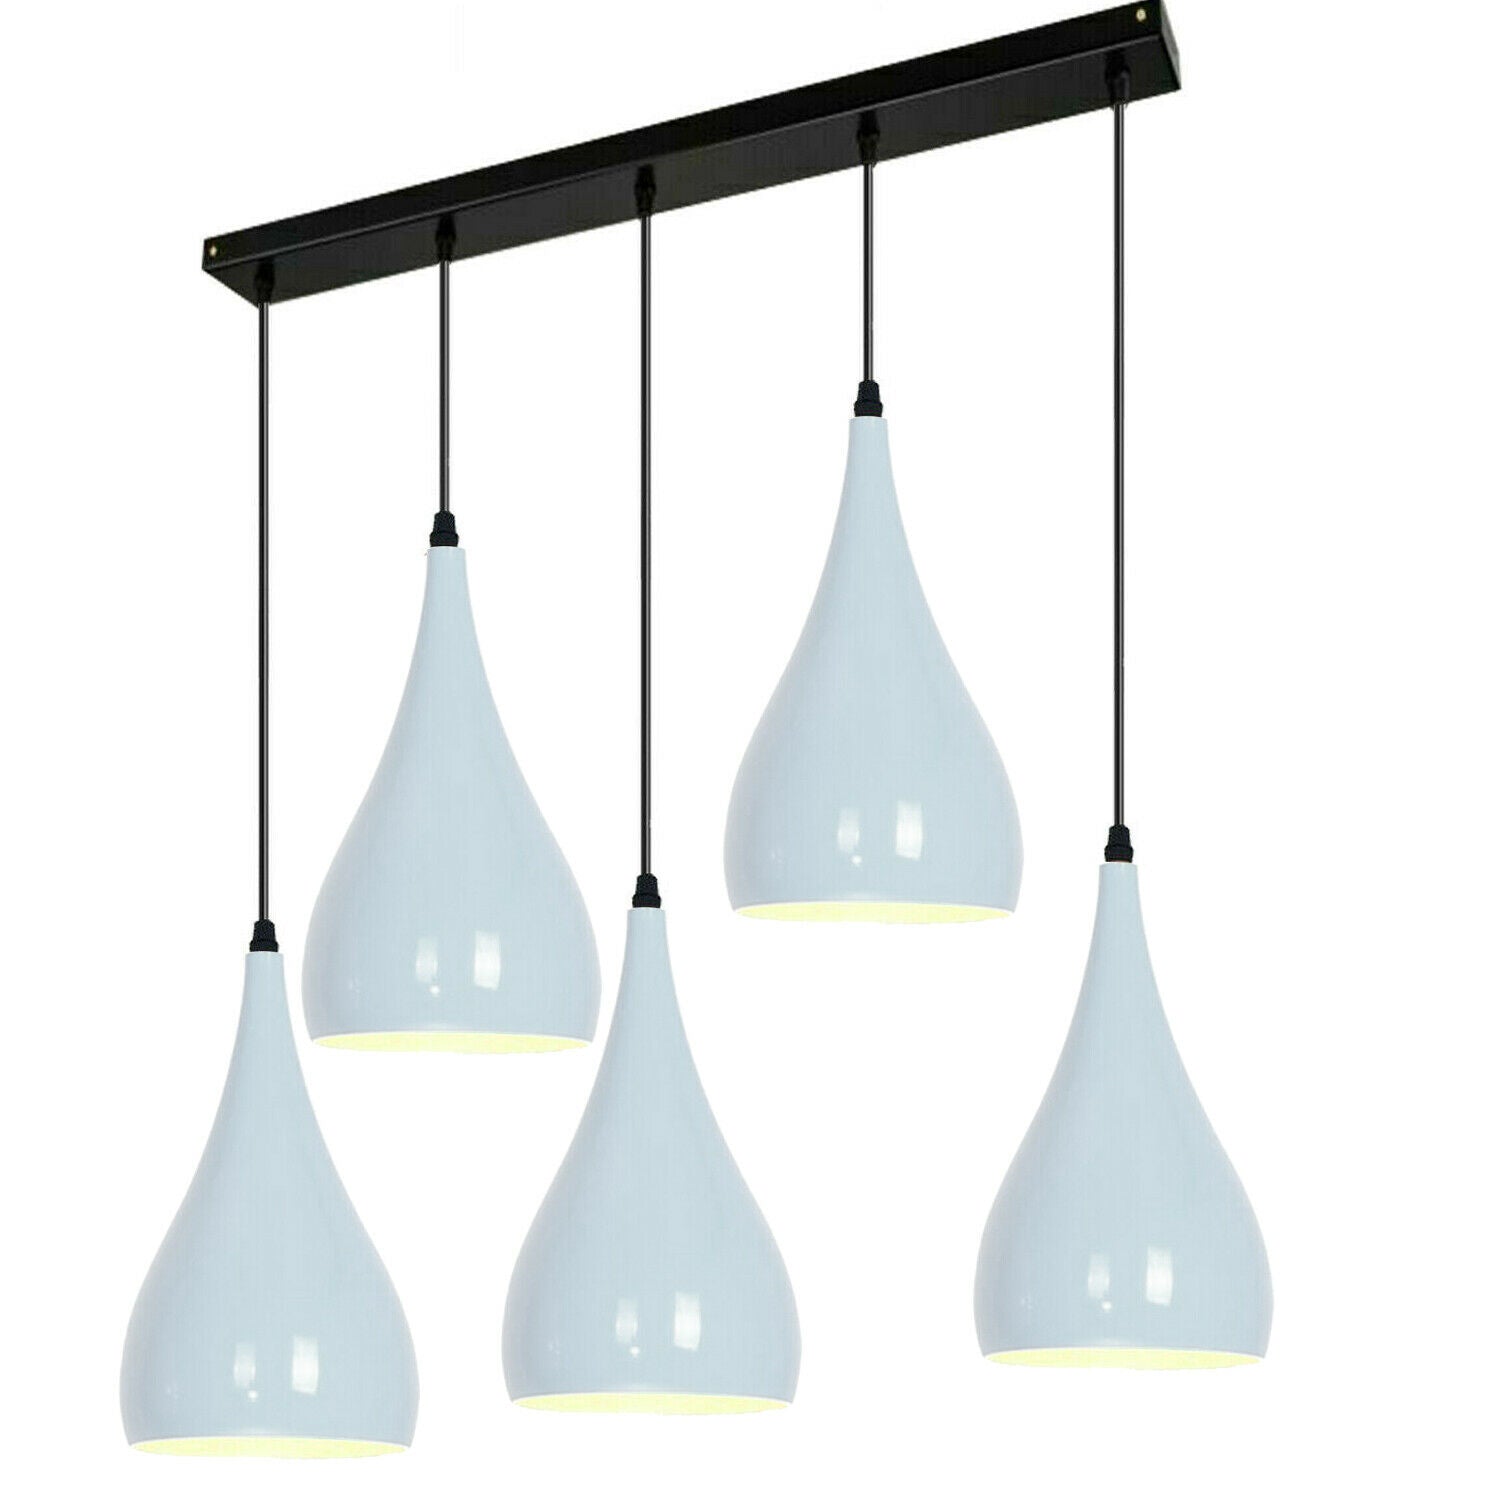 White 5 Outlet Ceiling Light Fixtures Black Hanging Pendant Lighting~1628 - LEDSone UK Ltd